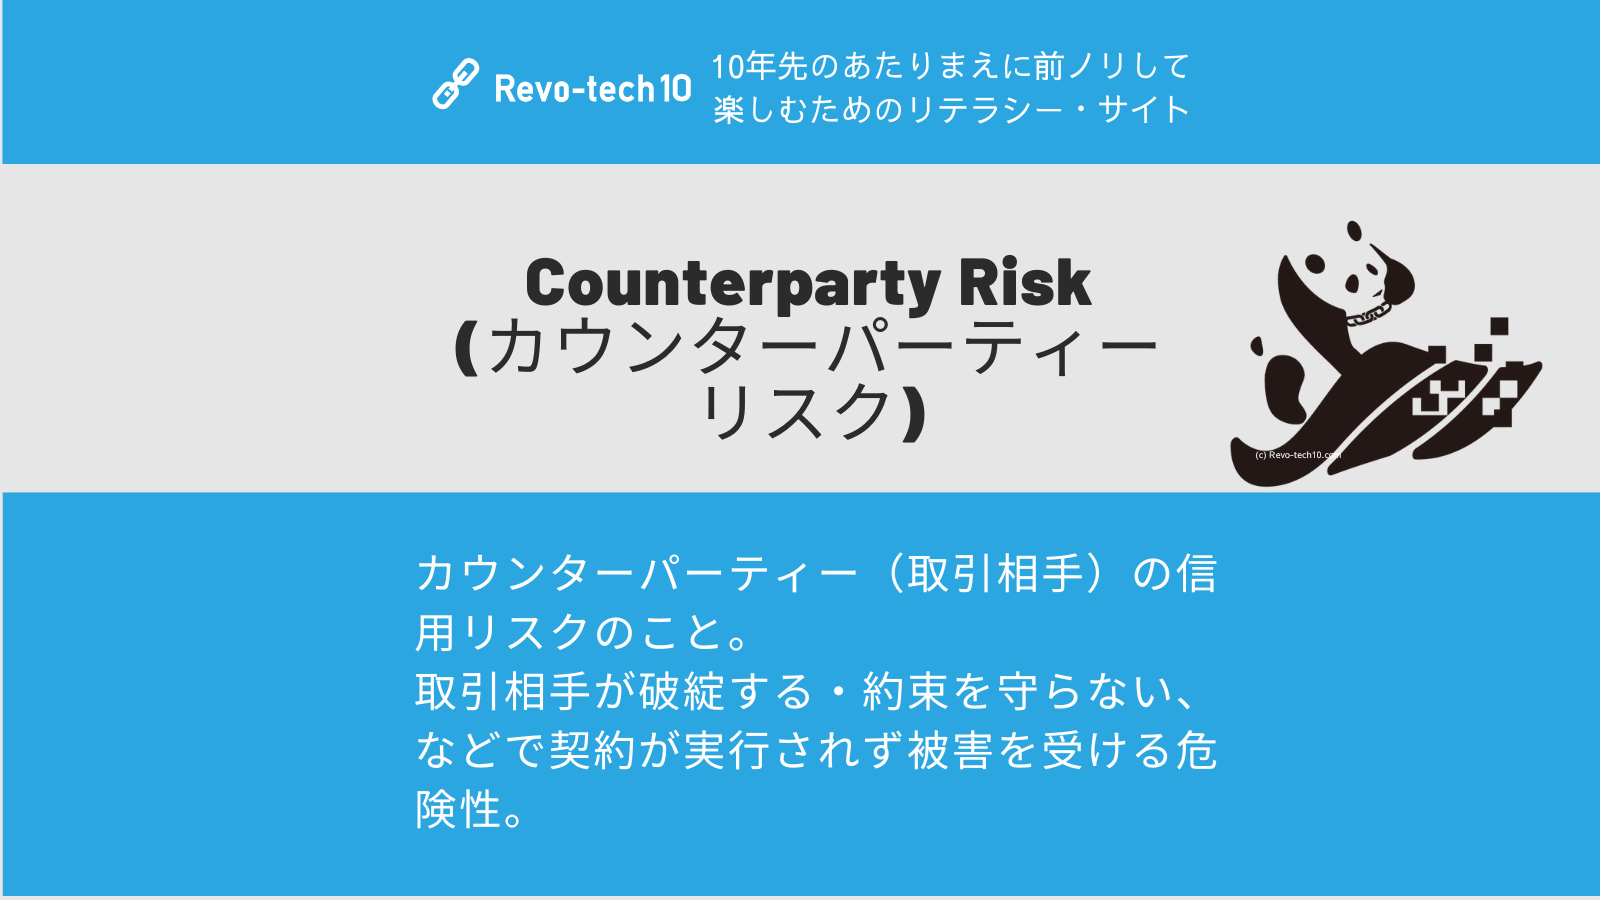 0067_Counterparty Risk(カウンターパーティー・リスク)とは、カウンターパーティー（取引相手）の信用リスクのこと。 取引相手が破綻する・約束を守らない、などで契約が実行されず被害を受ける危険性。